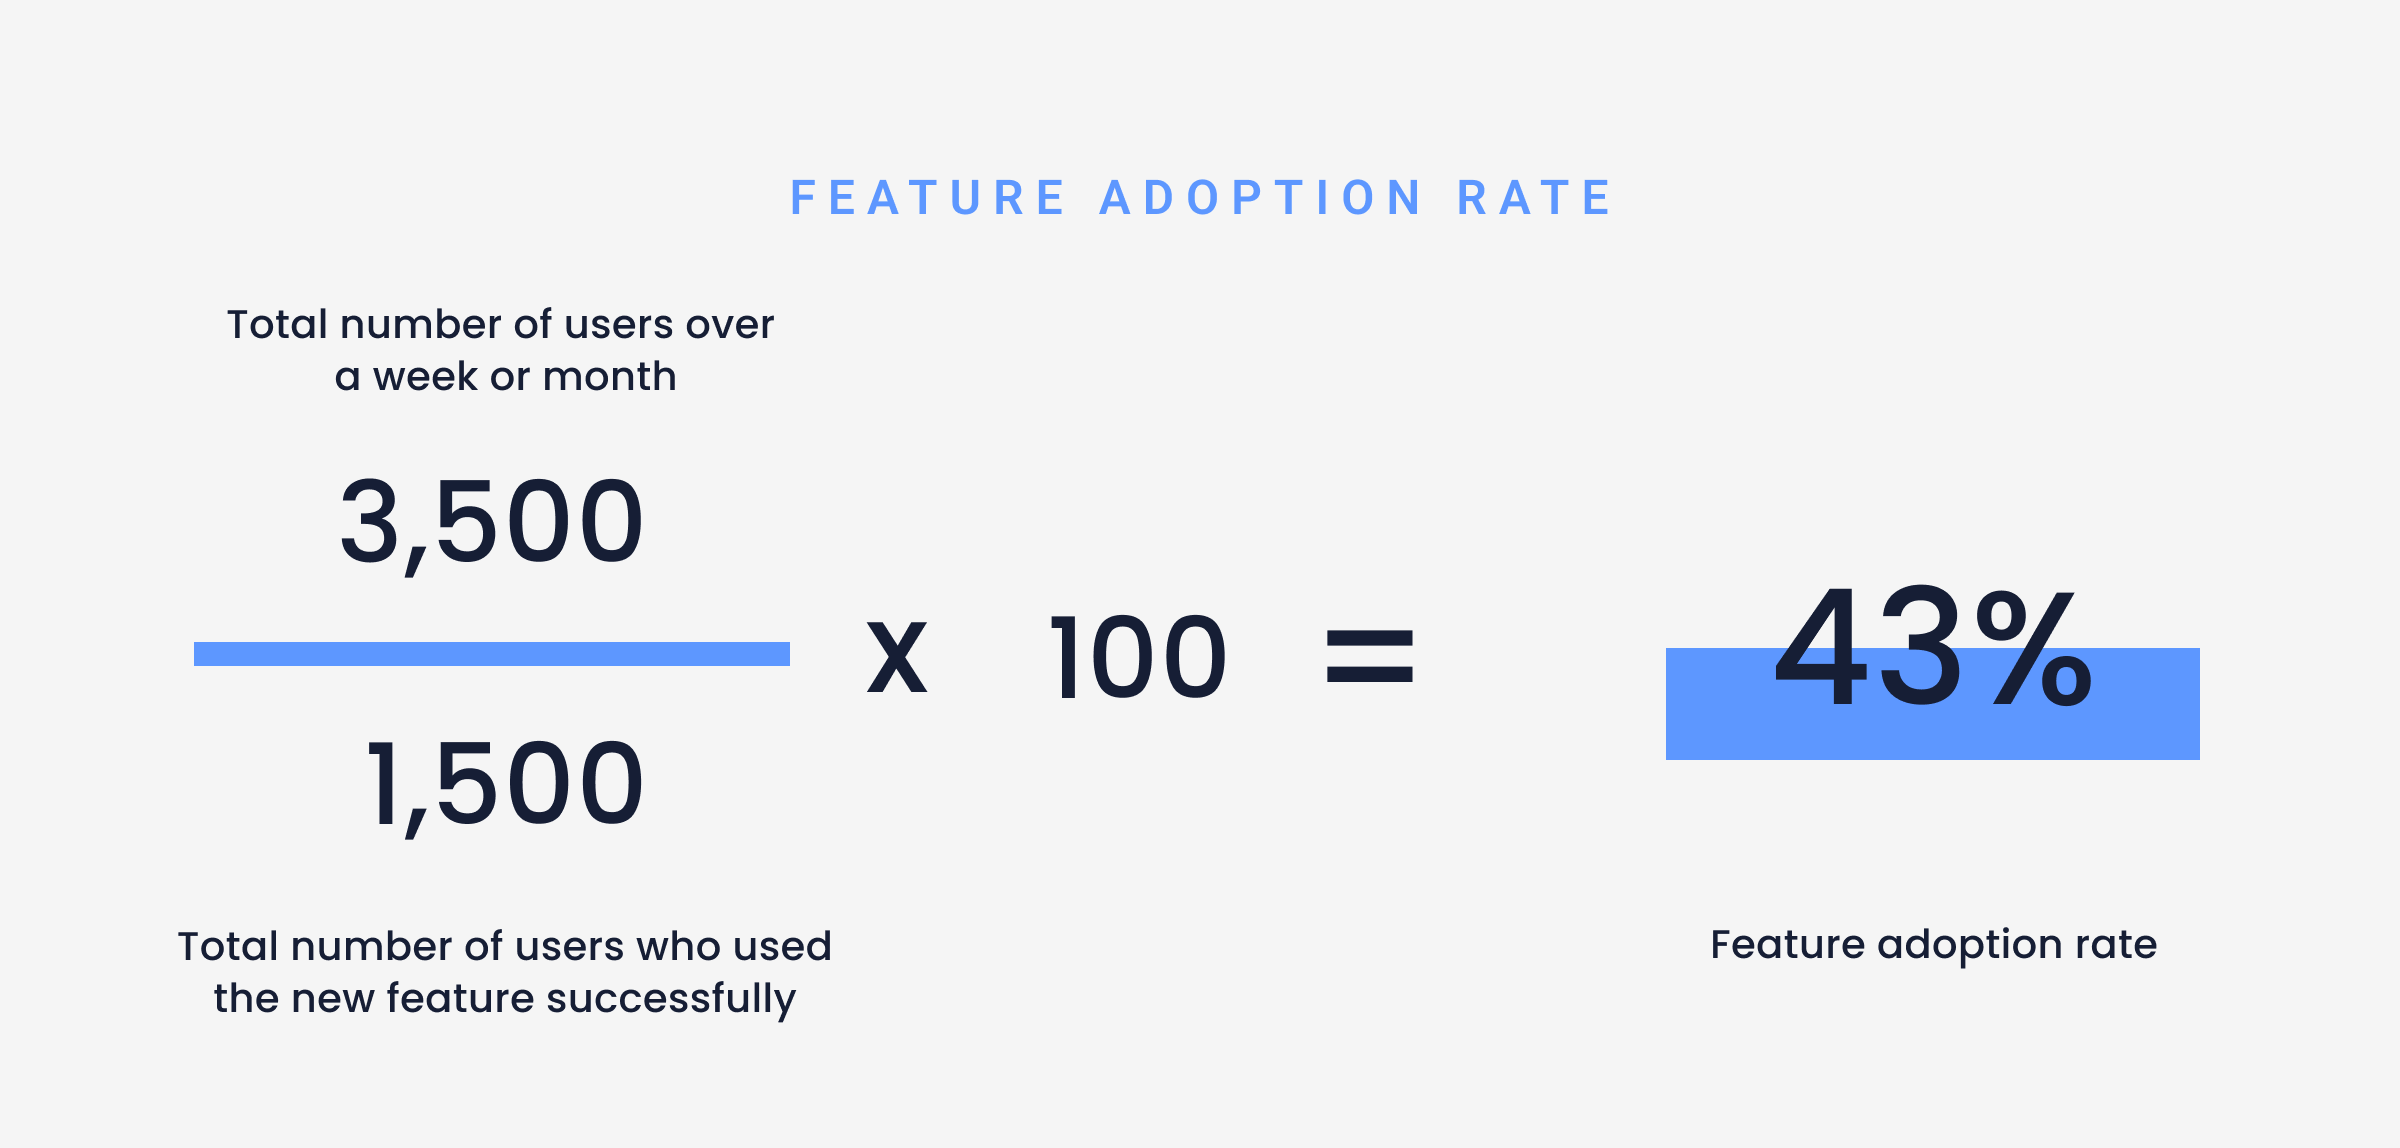 Blog Feautre 1200x630 feature adoption rate 5 -min